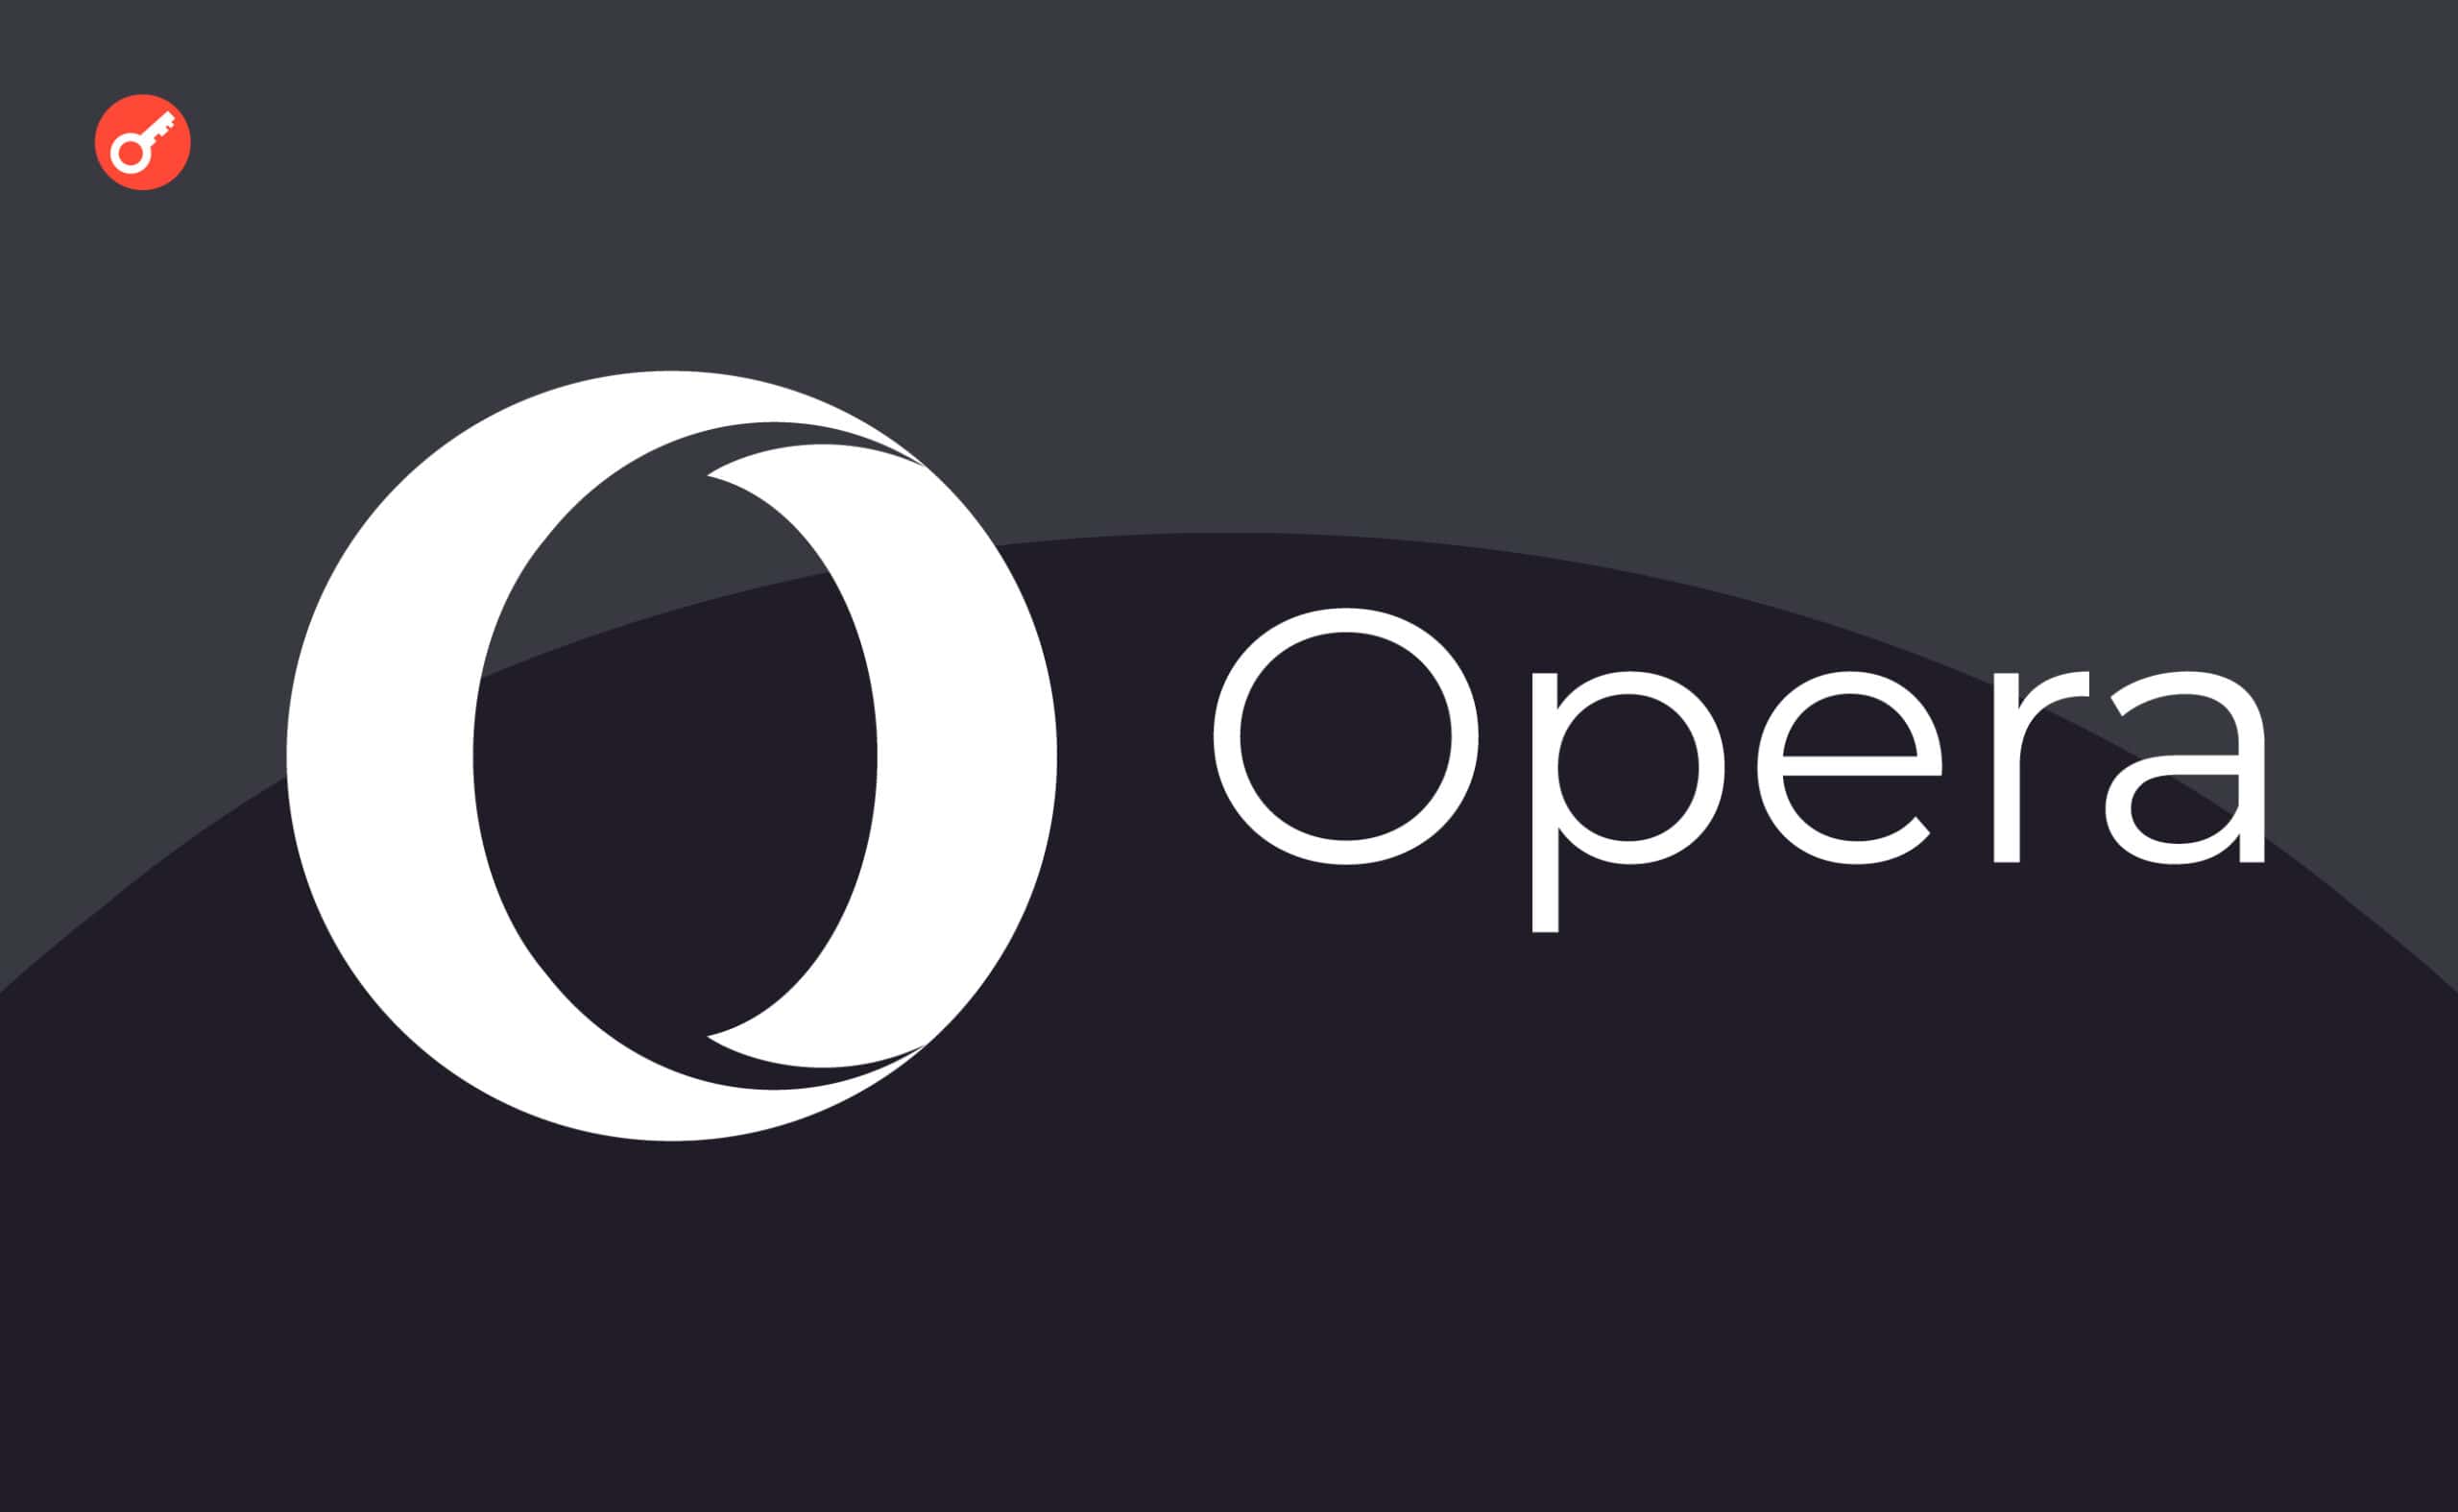 Opera wprowadza przeglądarkę Opera One z funkcjami AI. Główny kolaż wiadomości.